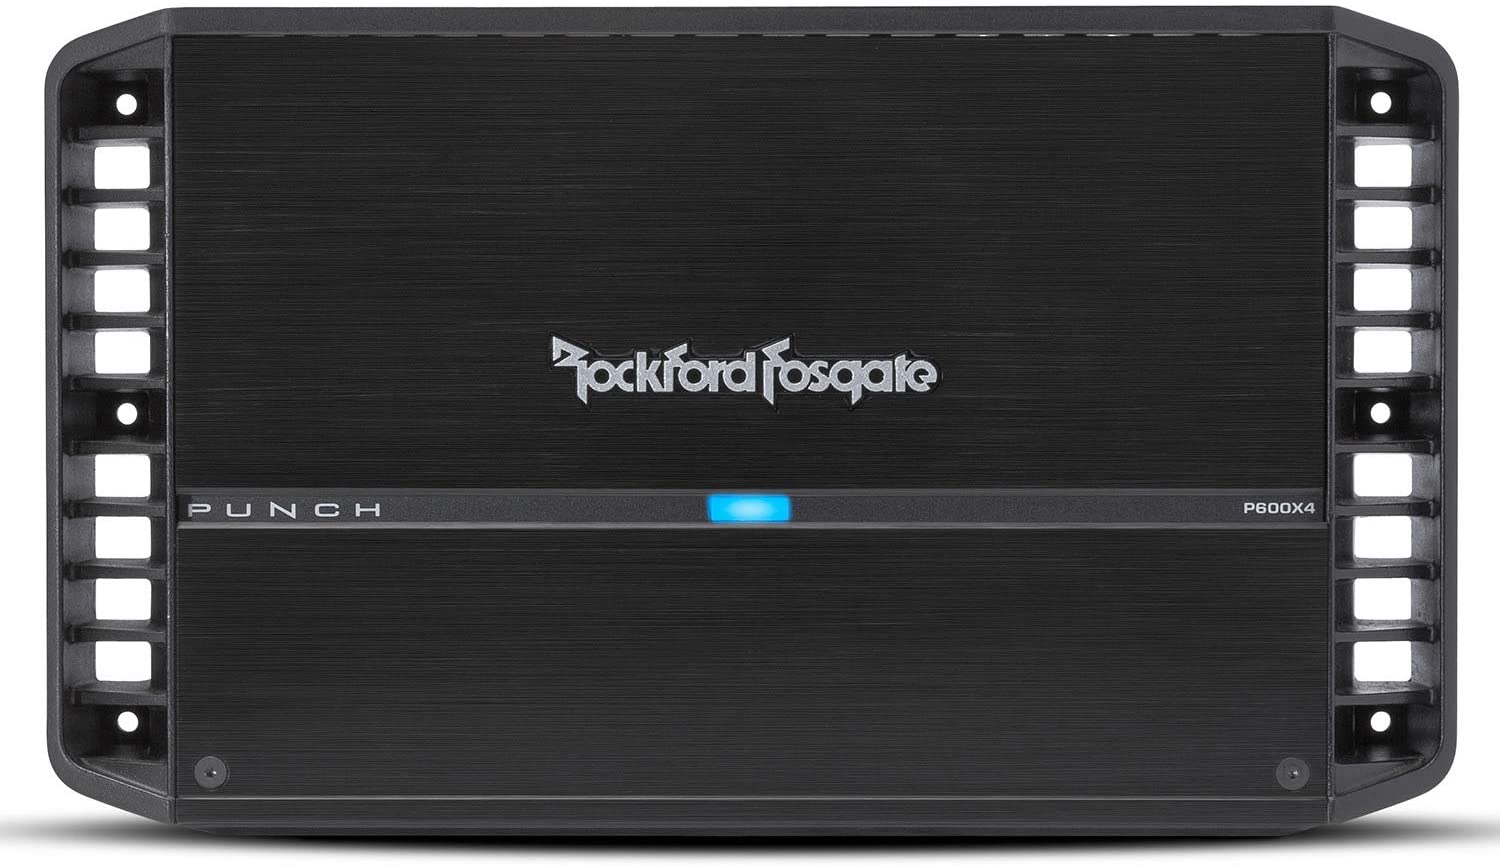 Rockford Fosgate P600X4 Amplifier